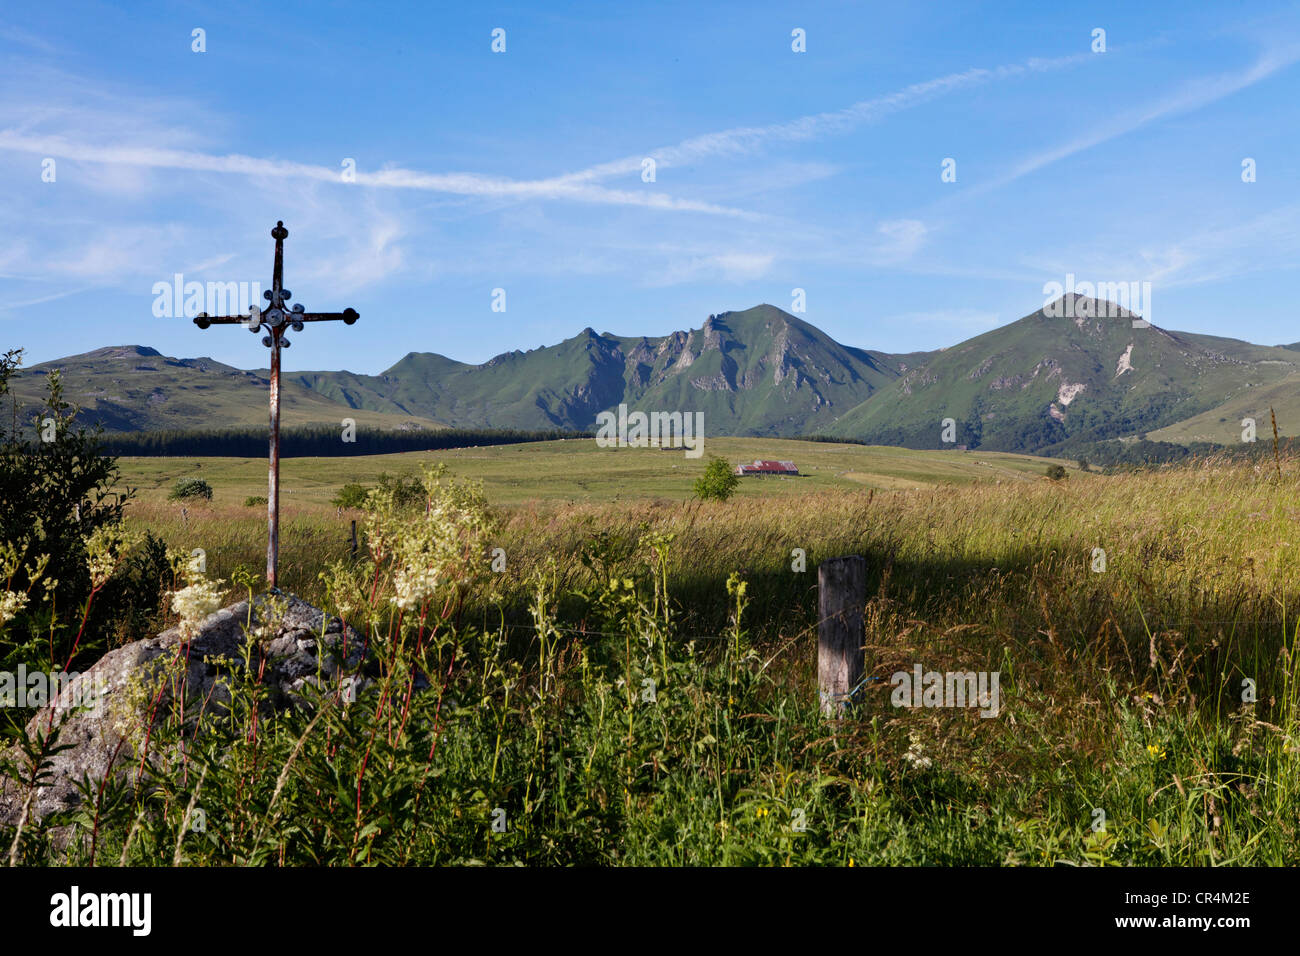 Fontaine Salee riserva, vulcani di Auvergne parco naturale regionale, massiccio del Sancy, Puy de Dome, Auvergne Francia, Europa Foto Stock